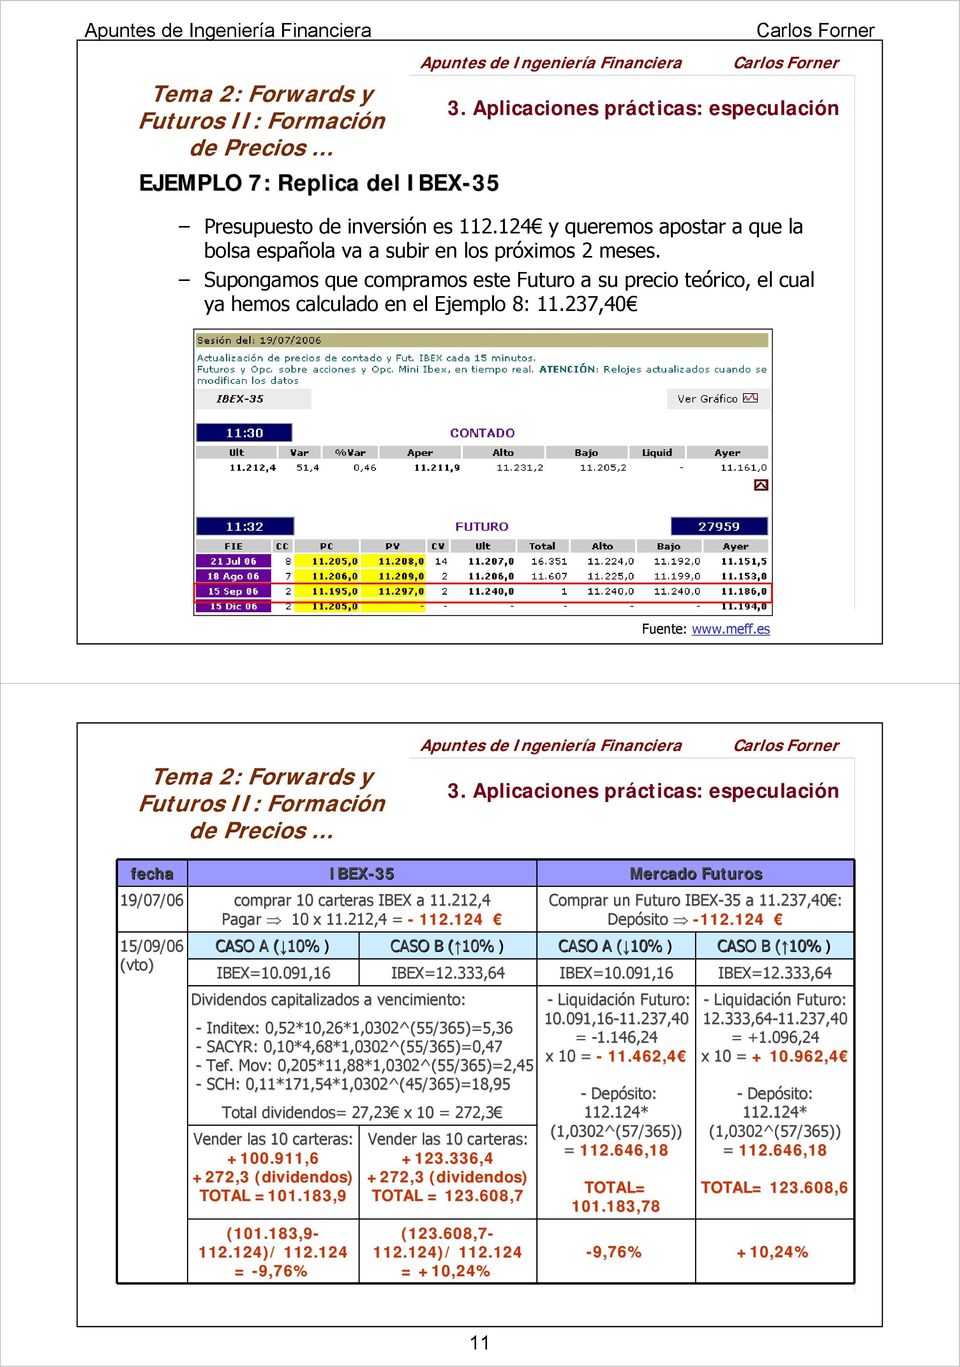 Aplicaciones prácticas: especulación fecha 19/07/06 comprar 10 carteras IBEX a 11.212,4 Pagar 10 x 11.212,4 = - 112.124 15/09/06 (vto) IBEX-35 Mercado Futuros Comprar un Futuro IBEX-35 a 11.